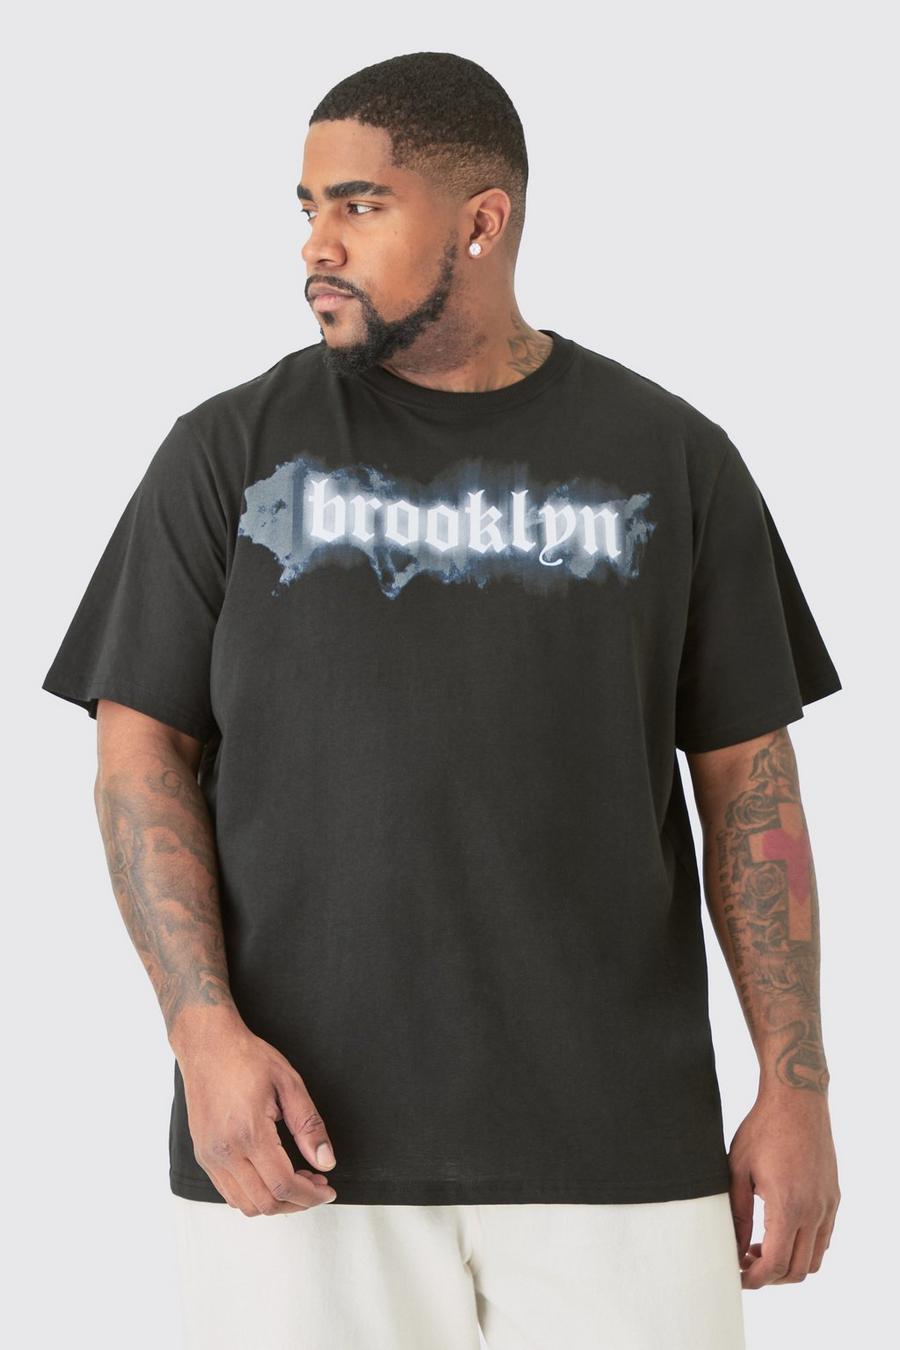 Plus schwarzes T-Shirt mit Brooklyn-Print, Black